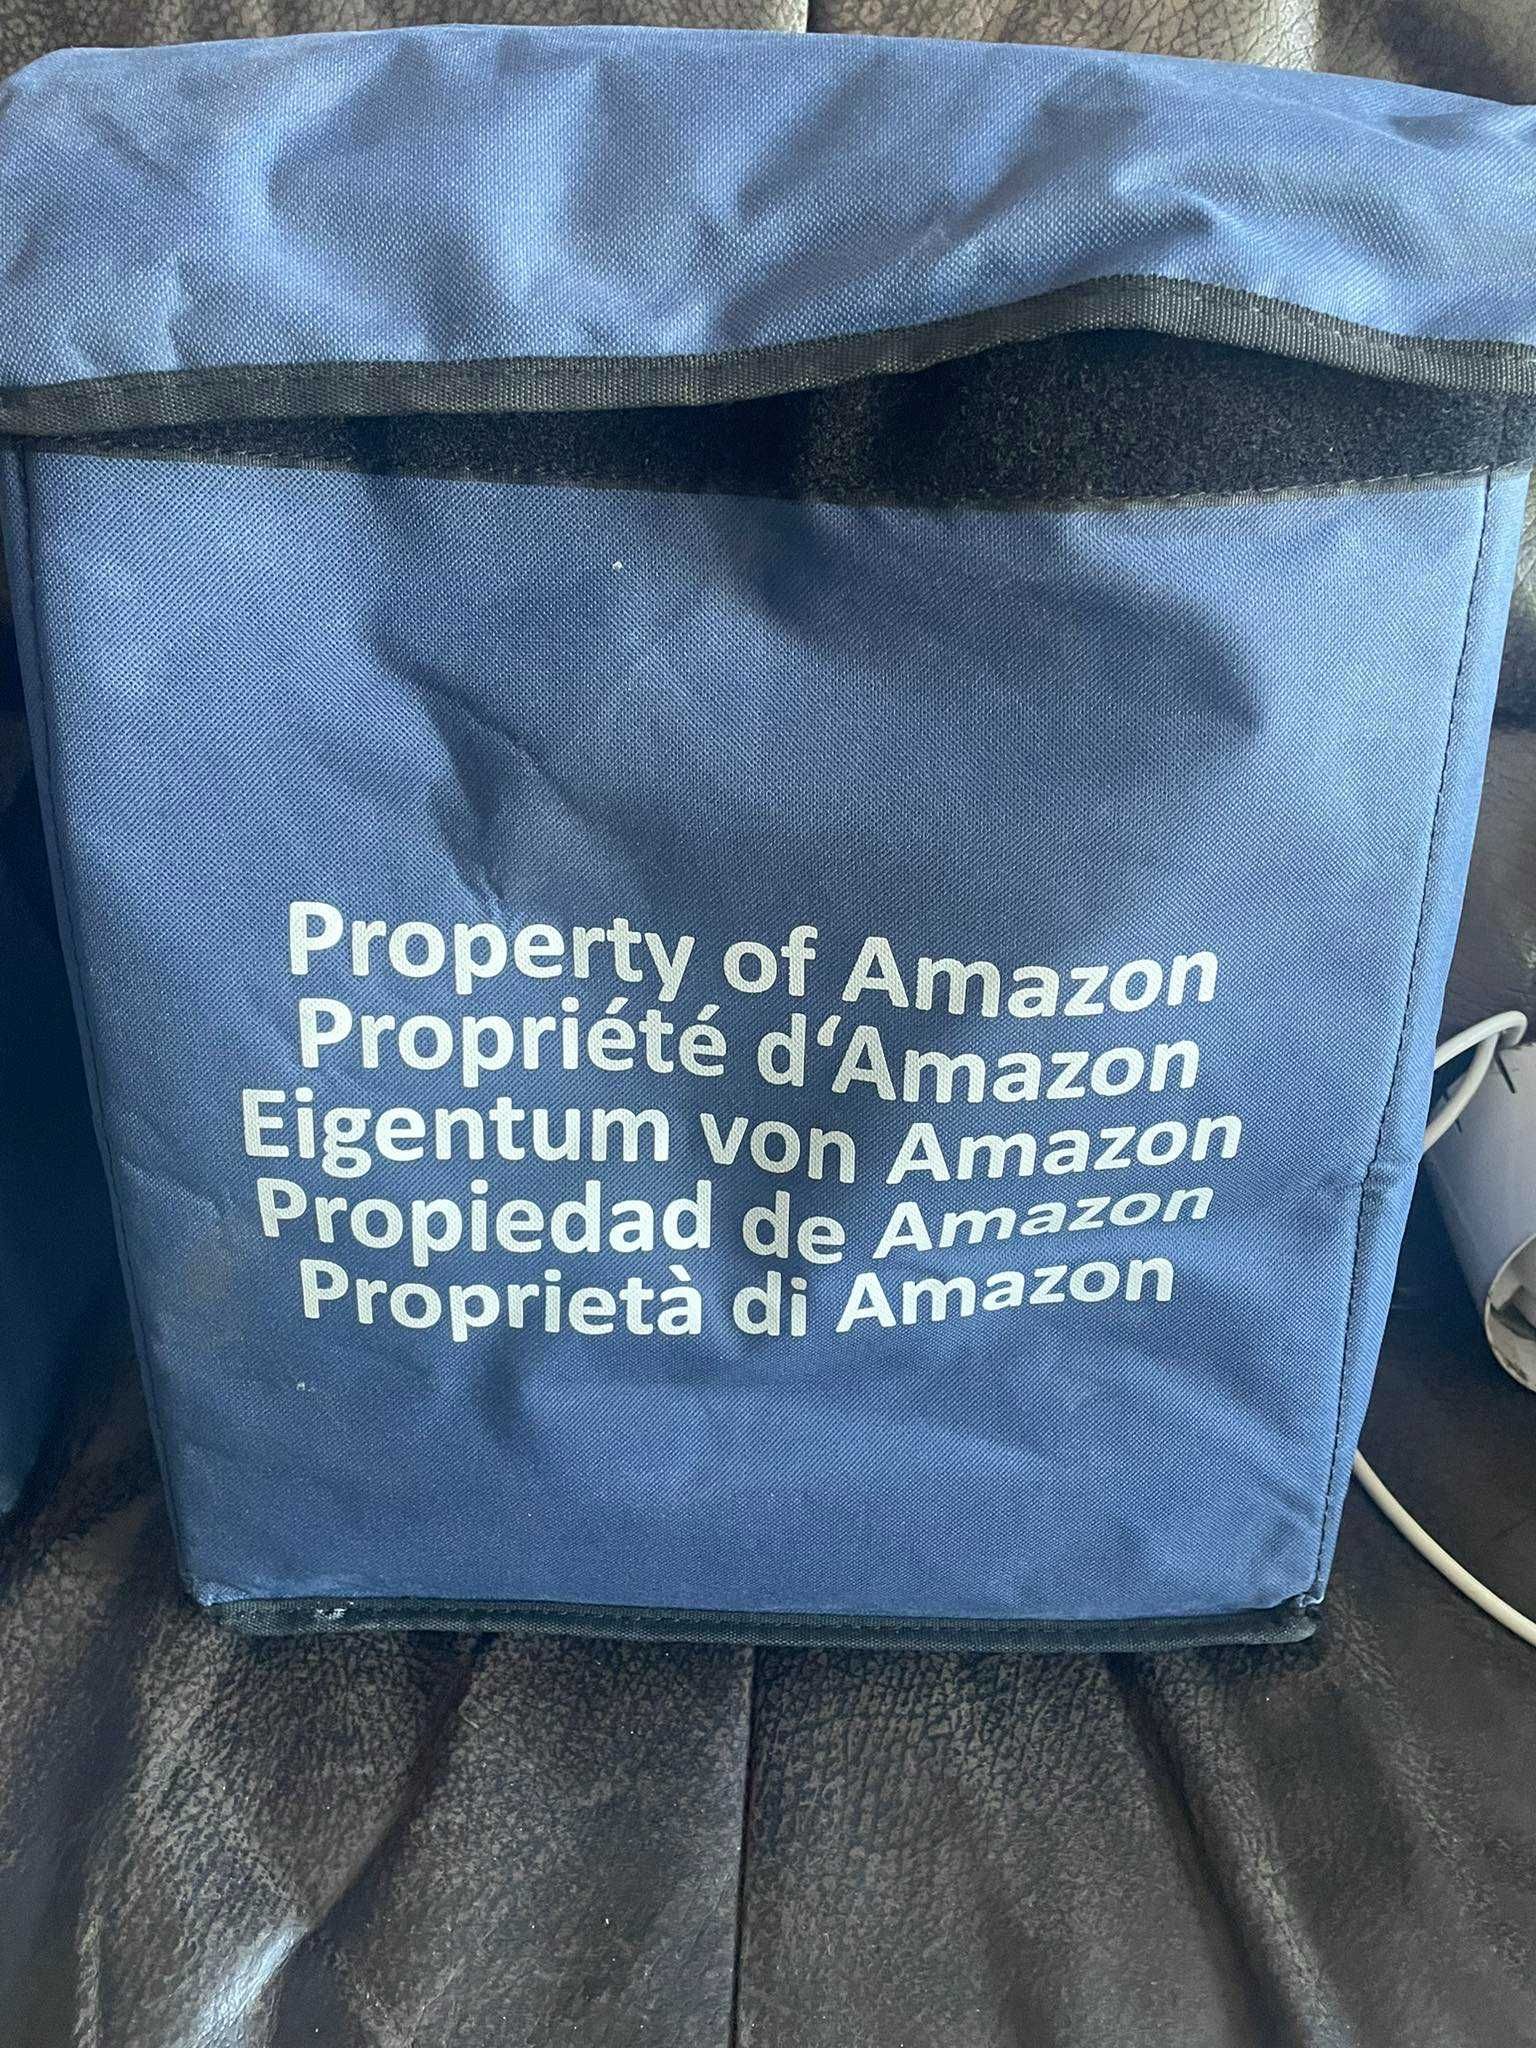 Torby Amazon z wkładami